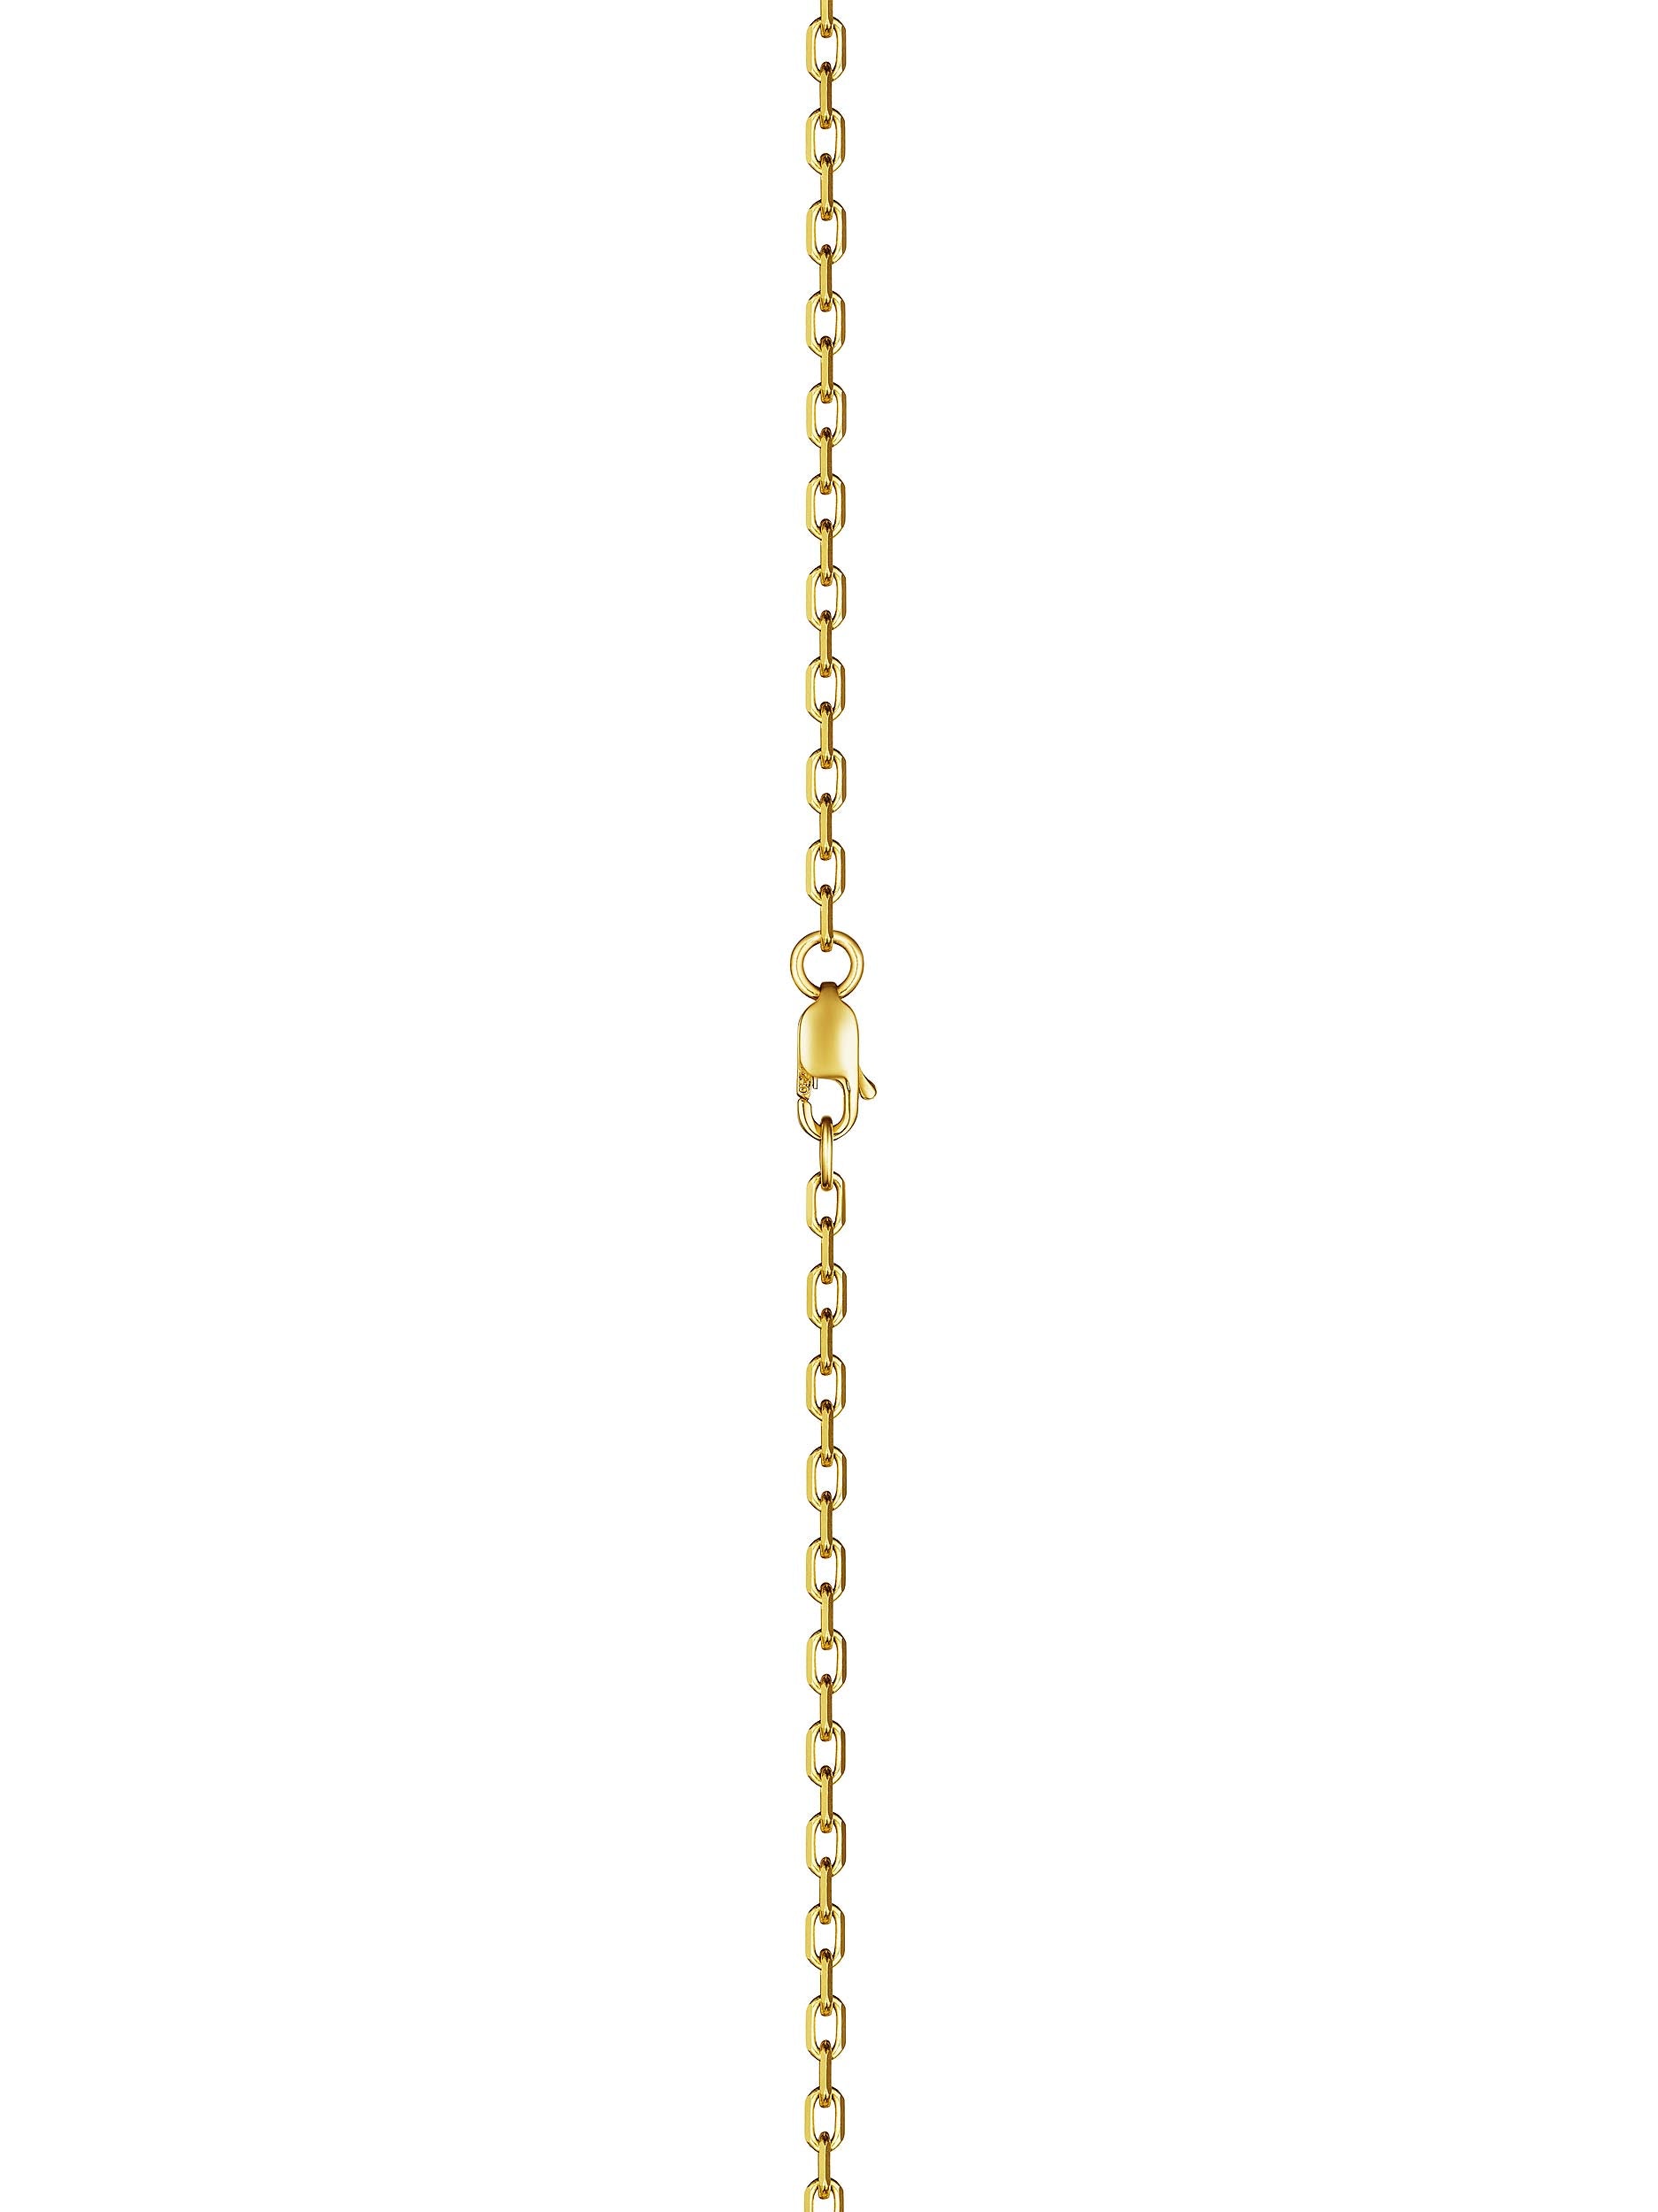 DouDou Pendant necklace, 18K Yellow Gold and Princess Cut Diamond